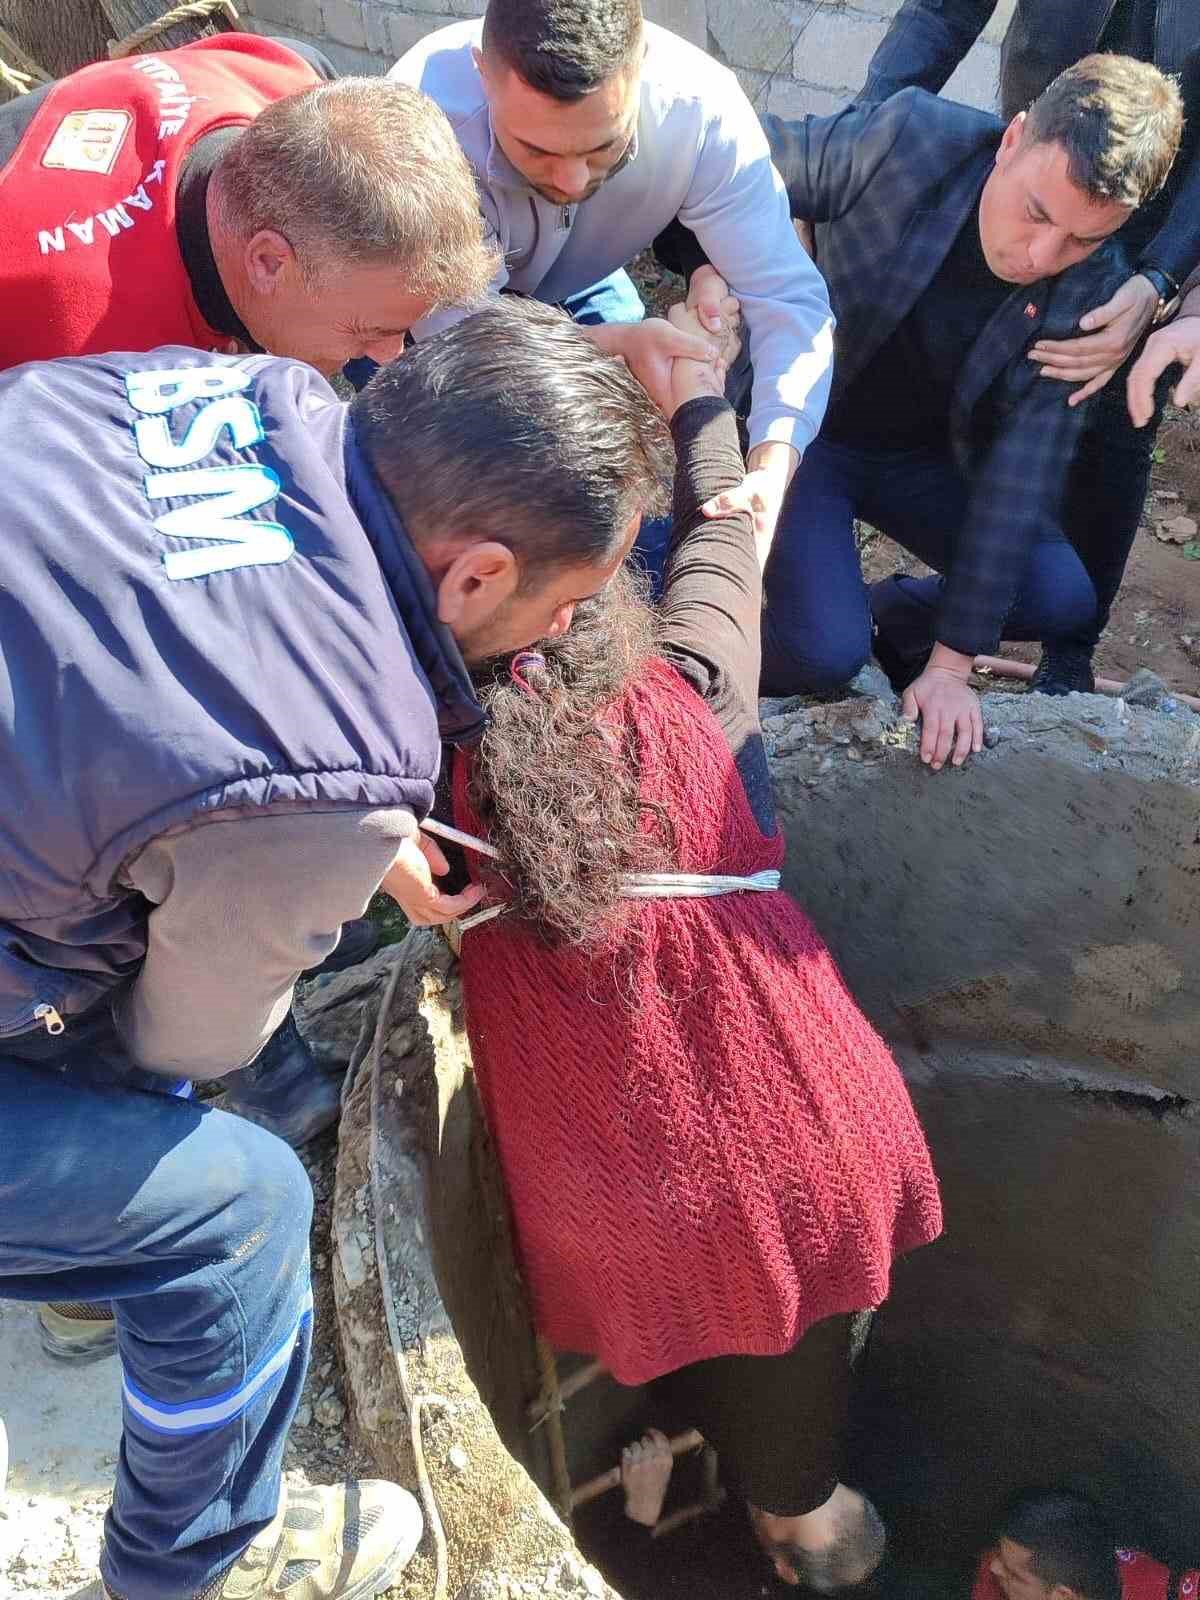 Ölümüyle Türkiye’nin gündemi olan Aleyna Çakır’ın ailesi su kuyusuna düştü